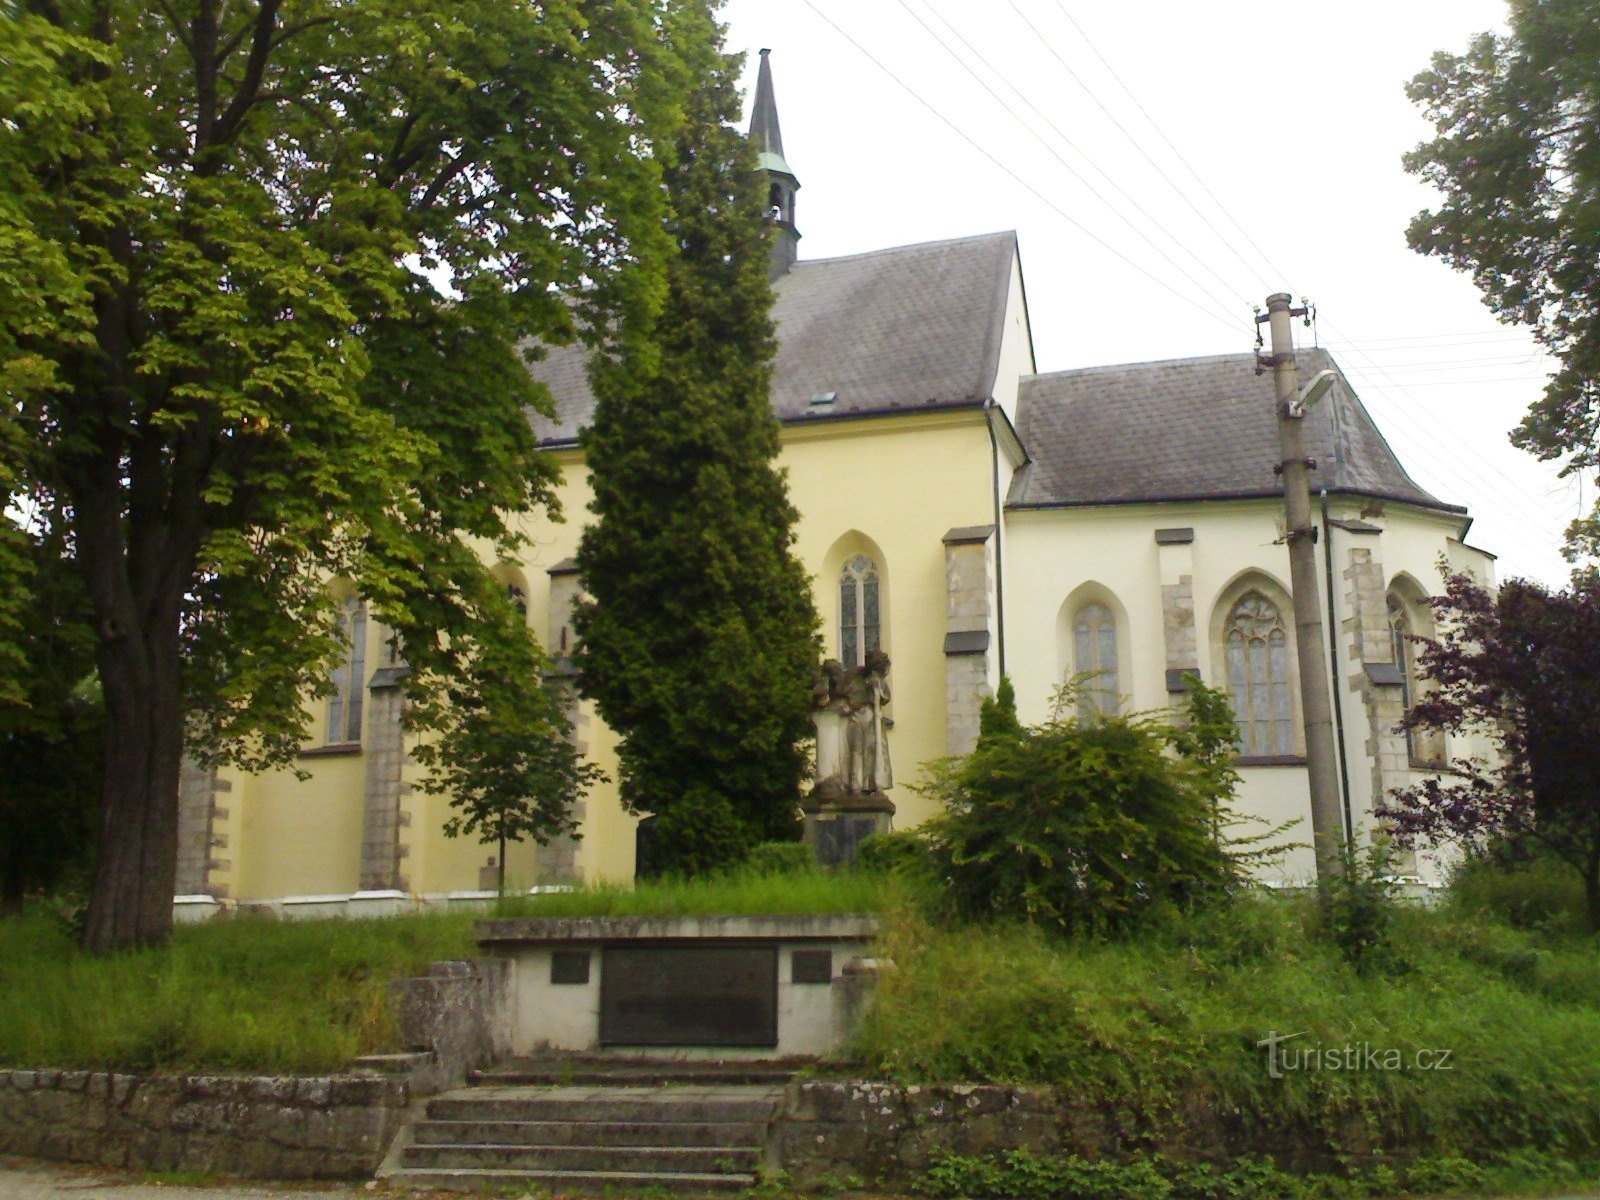 Rovensko pod Troskami - Pyhän Nikolauksen kirkko. Wenceslas